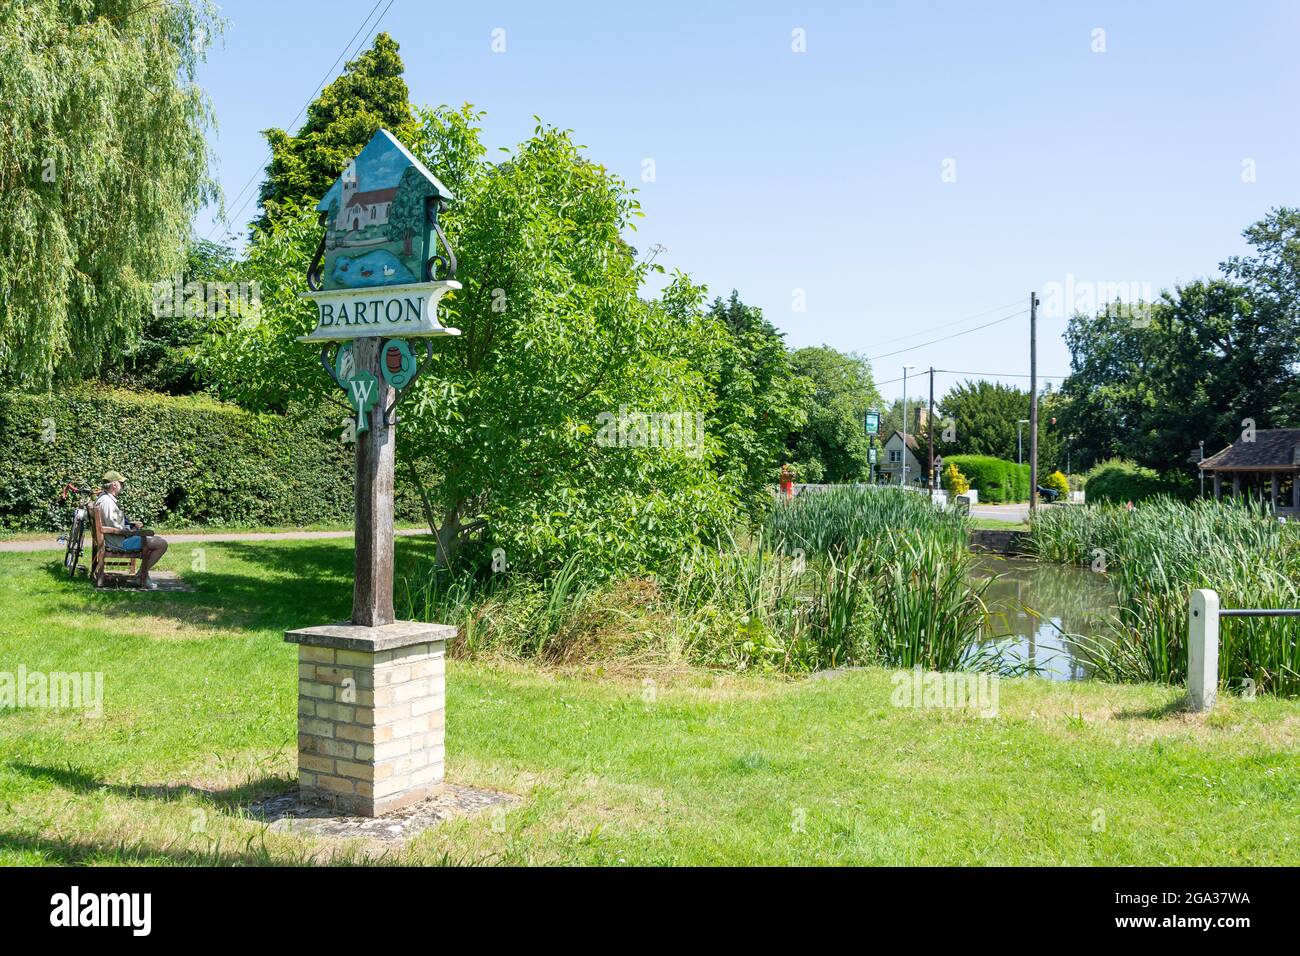 Barton village étang et panneau, Barton, Cambridgeshire, Angleterre, Royaume-Uni Banque D'Images